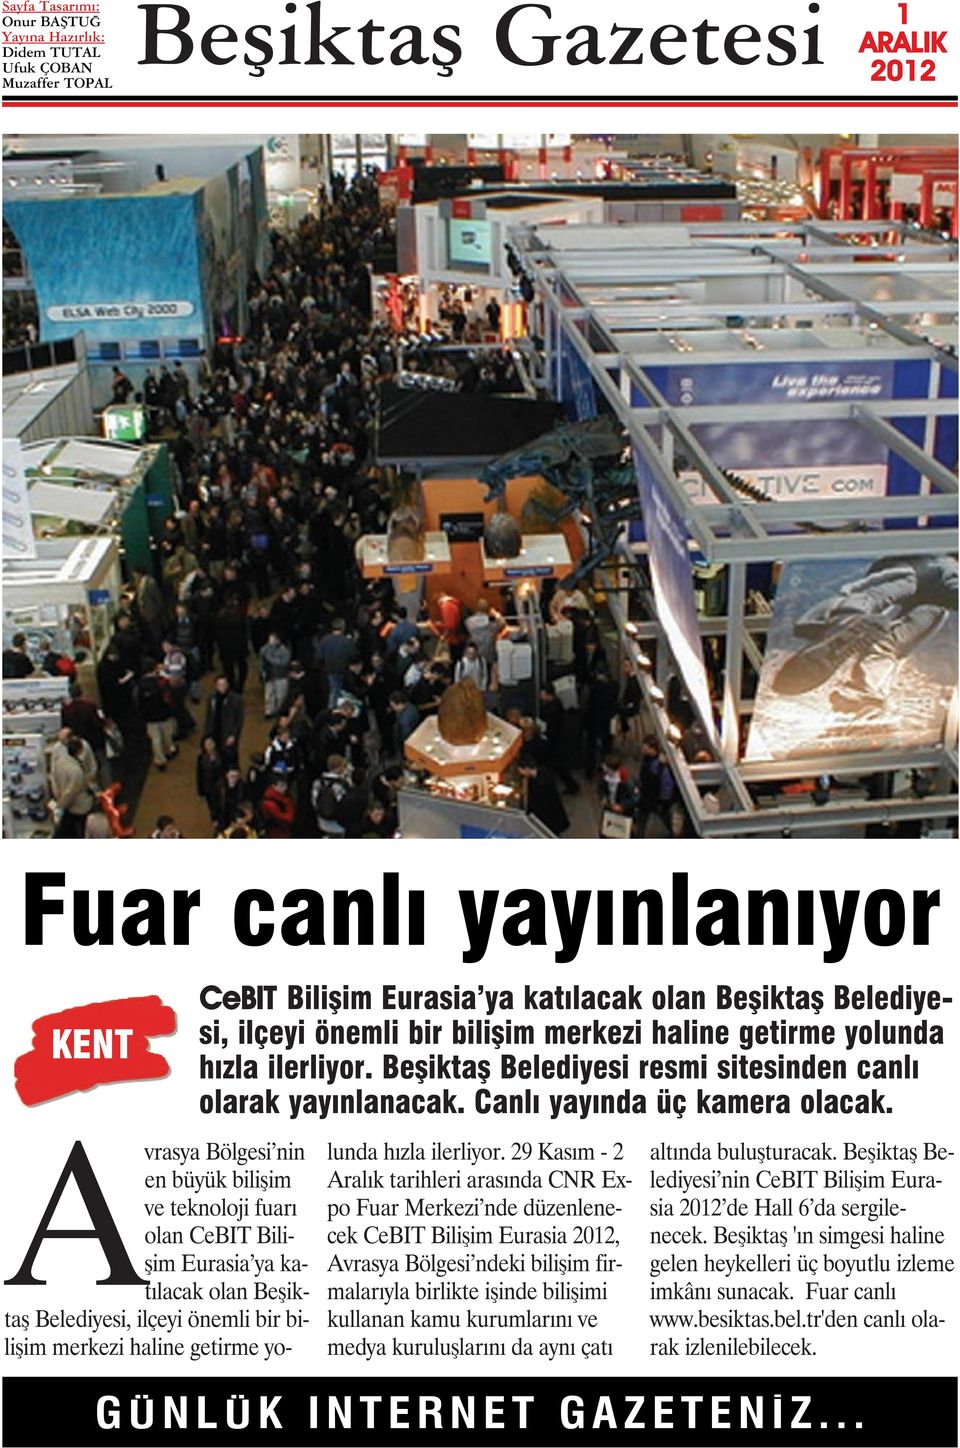 Avrasya Bölgesi nin en büyük bilişim ve teknoloji fuarı olan CeBIT Bilişim Eurasia ya katılacak olan Beşiktaş Belediyesi, ilçeyi önemli bir bilişim merkezi haline getirme yolunda hızla ilerliyor.